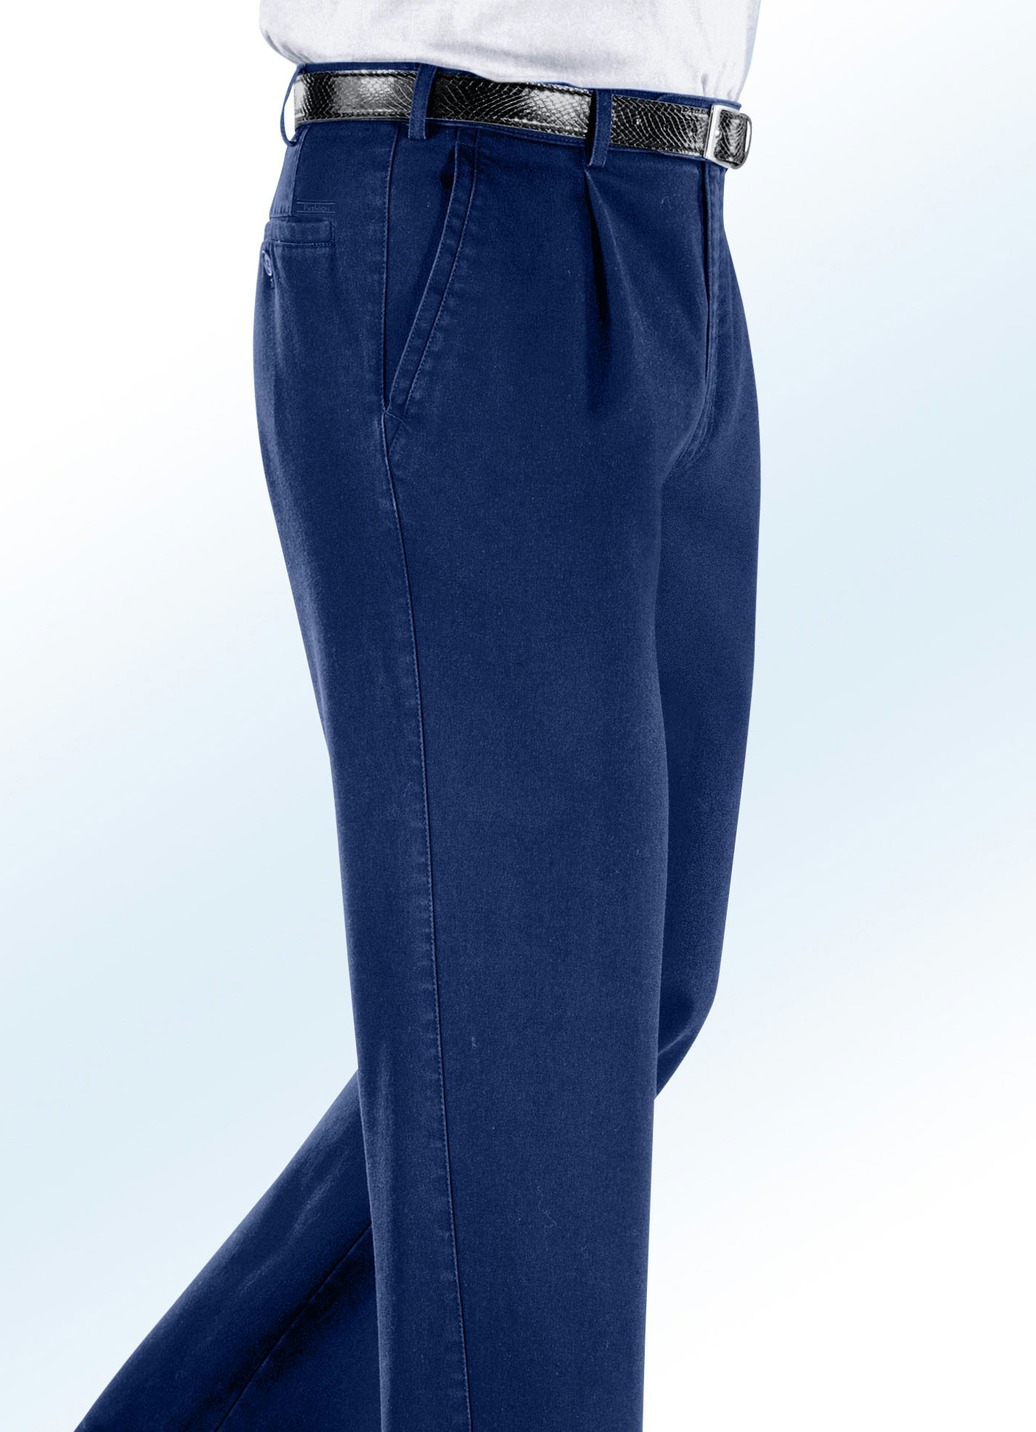 Bügelfreie Jeans mit Zieretikett in 3 Farben, Jeansblau, Größe 28 von BADER